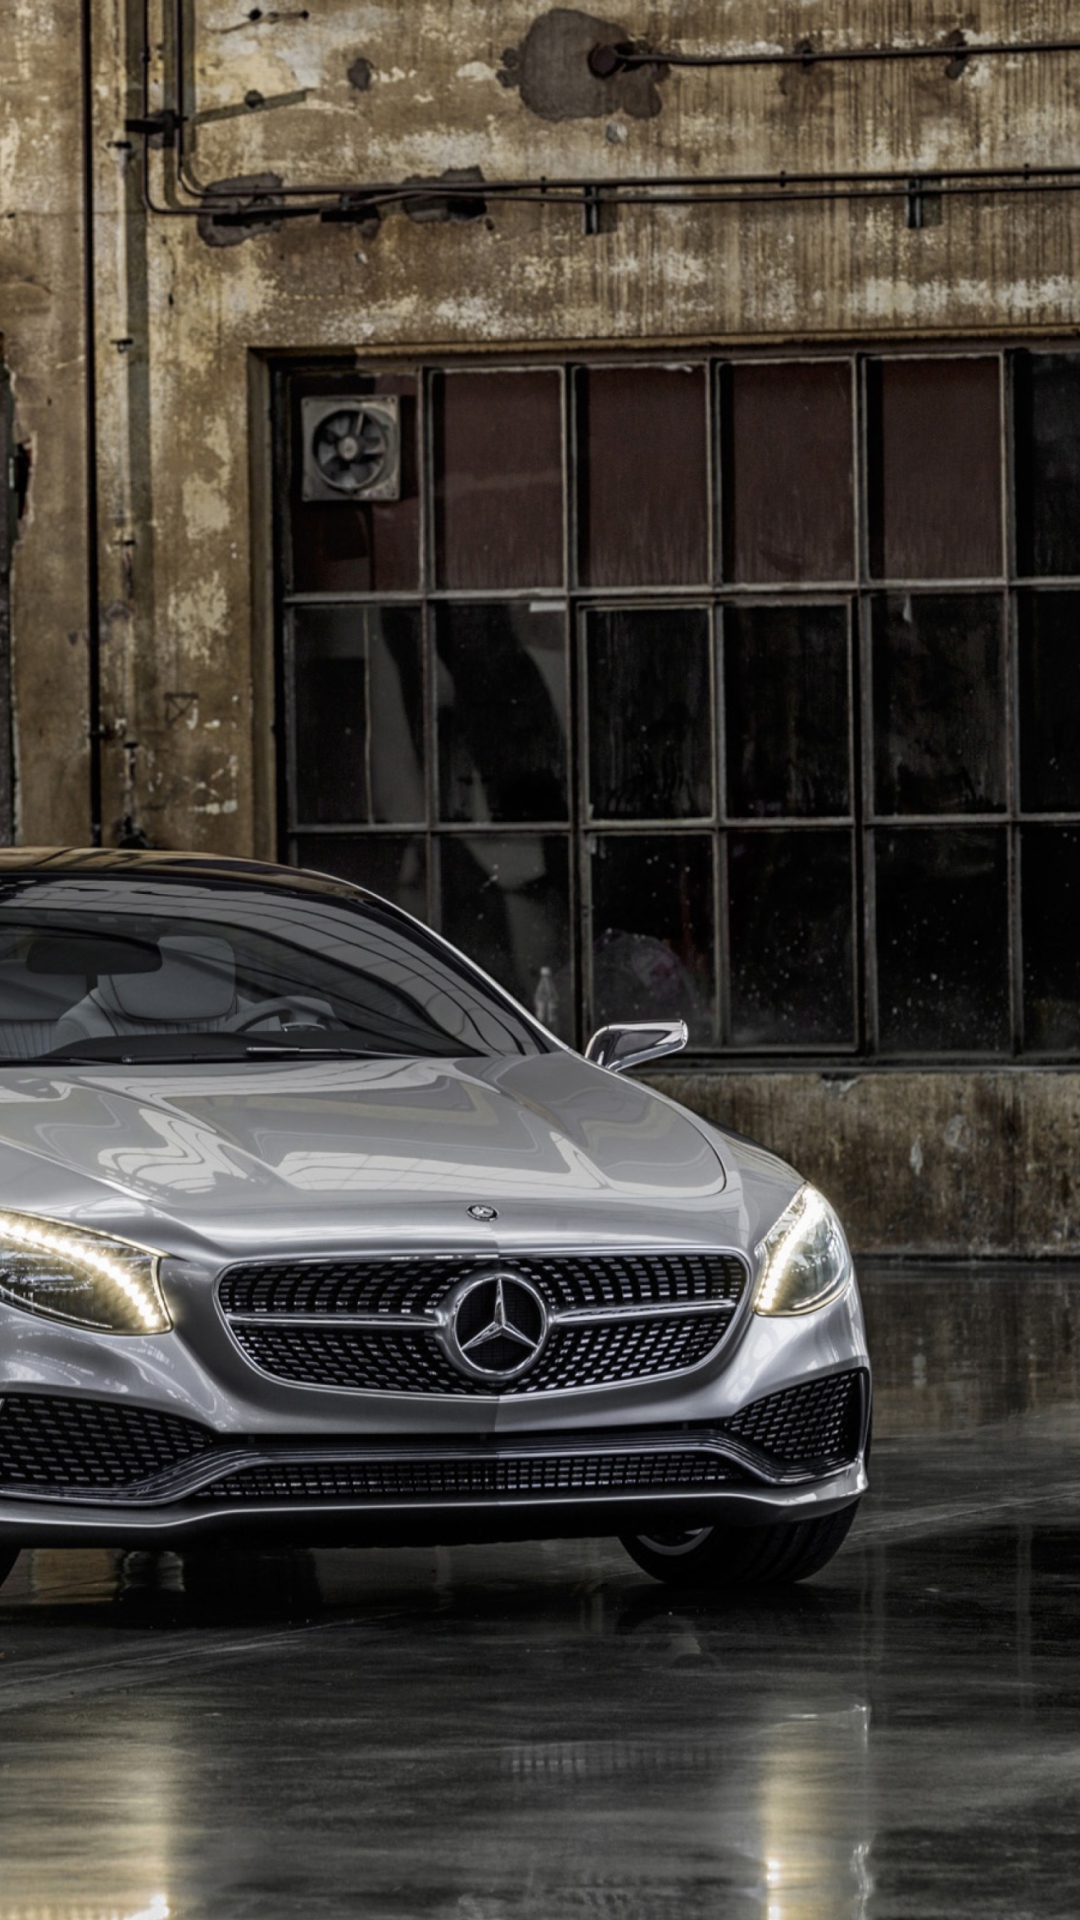 Mercedes Benz S Class Coupe 2013 screenshot #1 1080x1920